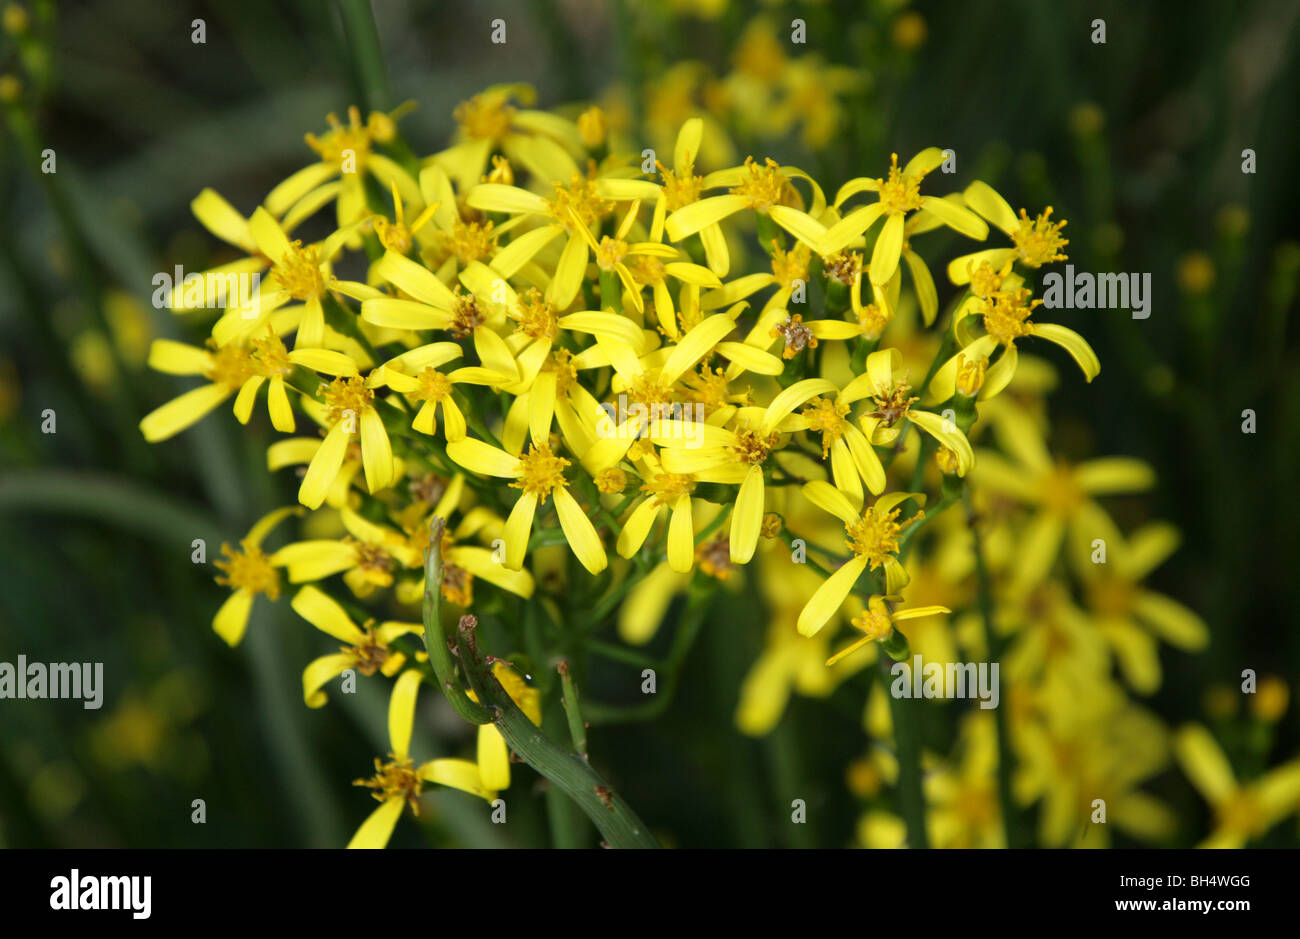 Senecio junceus, Asteraceae (Compositae), South Africa Stock Photo